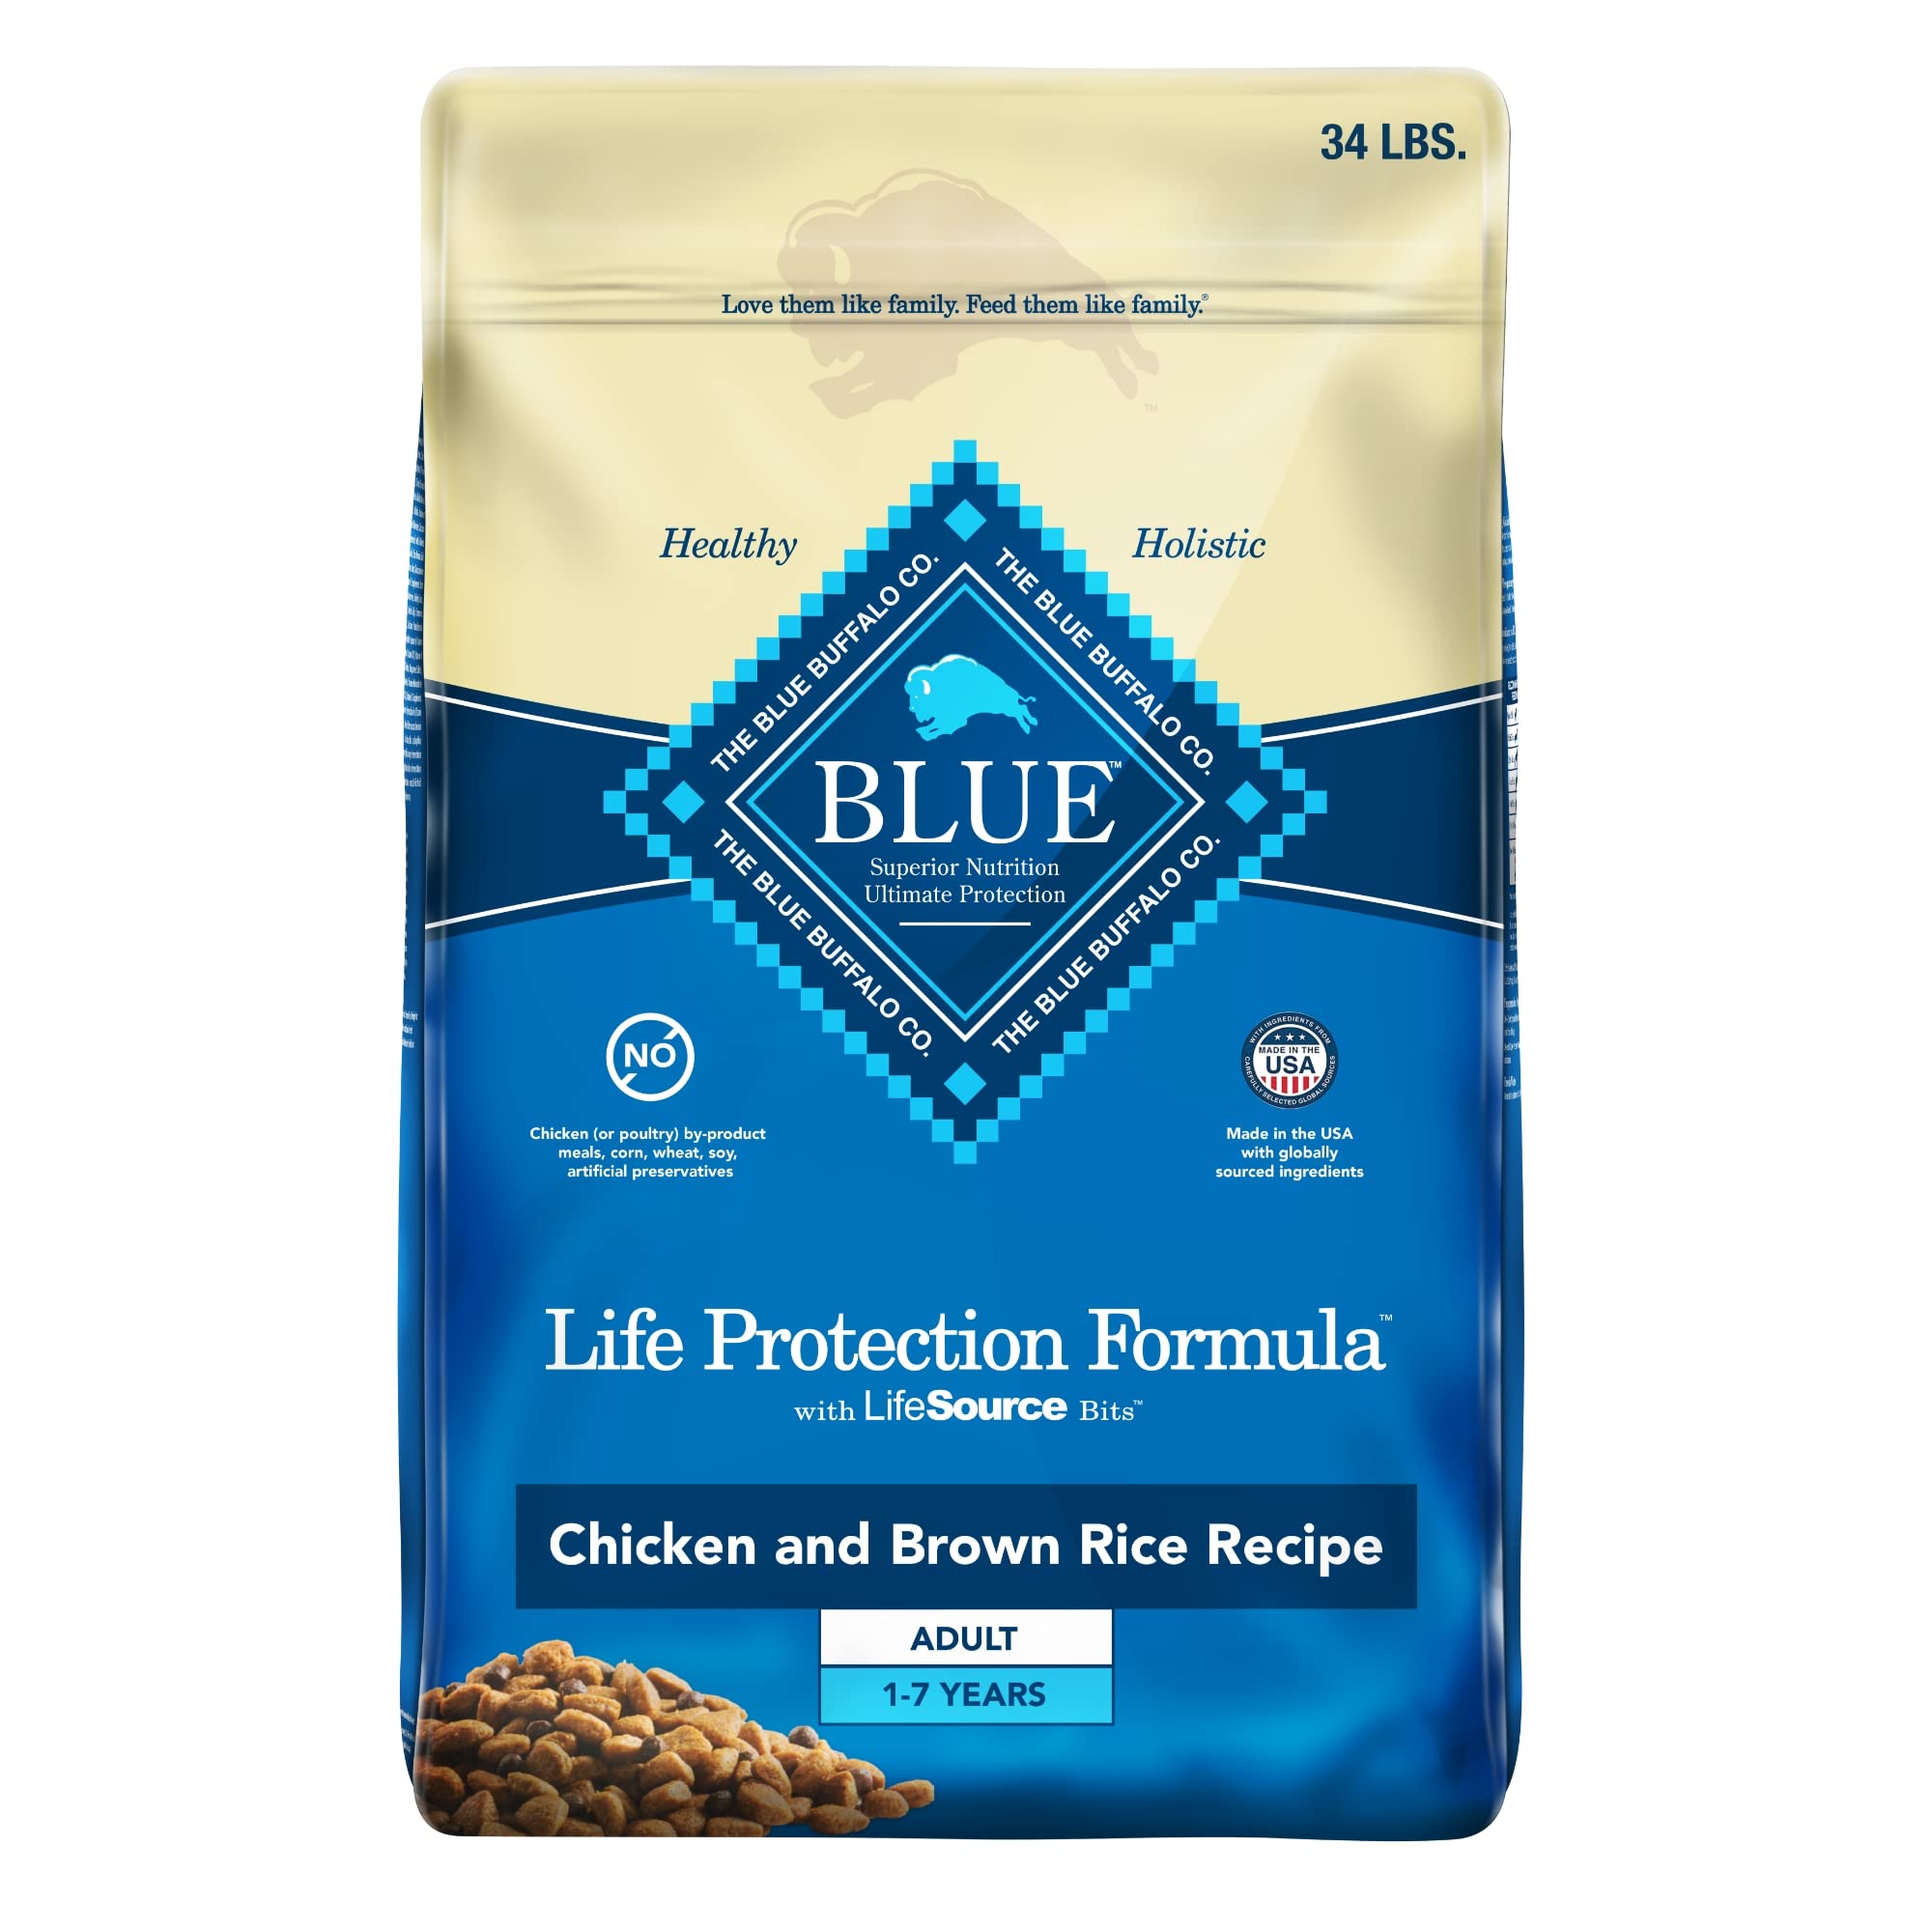 Blue Buffalo 狗粮，生命保护配方，天然鸡肉和糙米味，成人干狗粮，34 磅袋装...